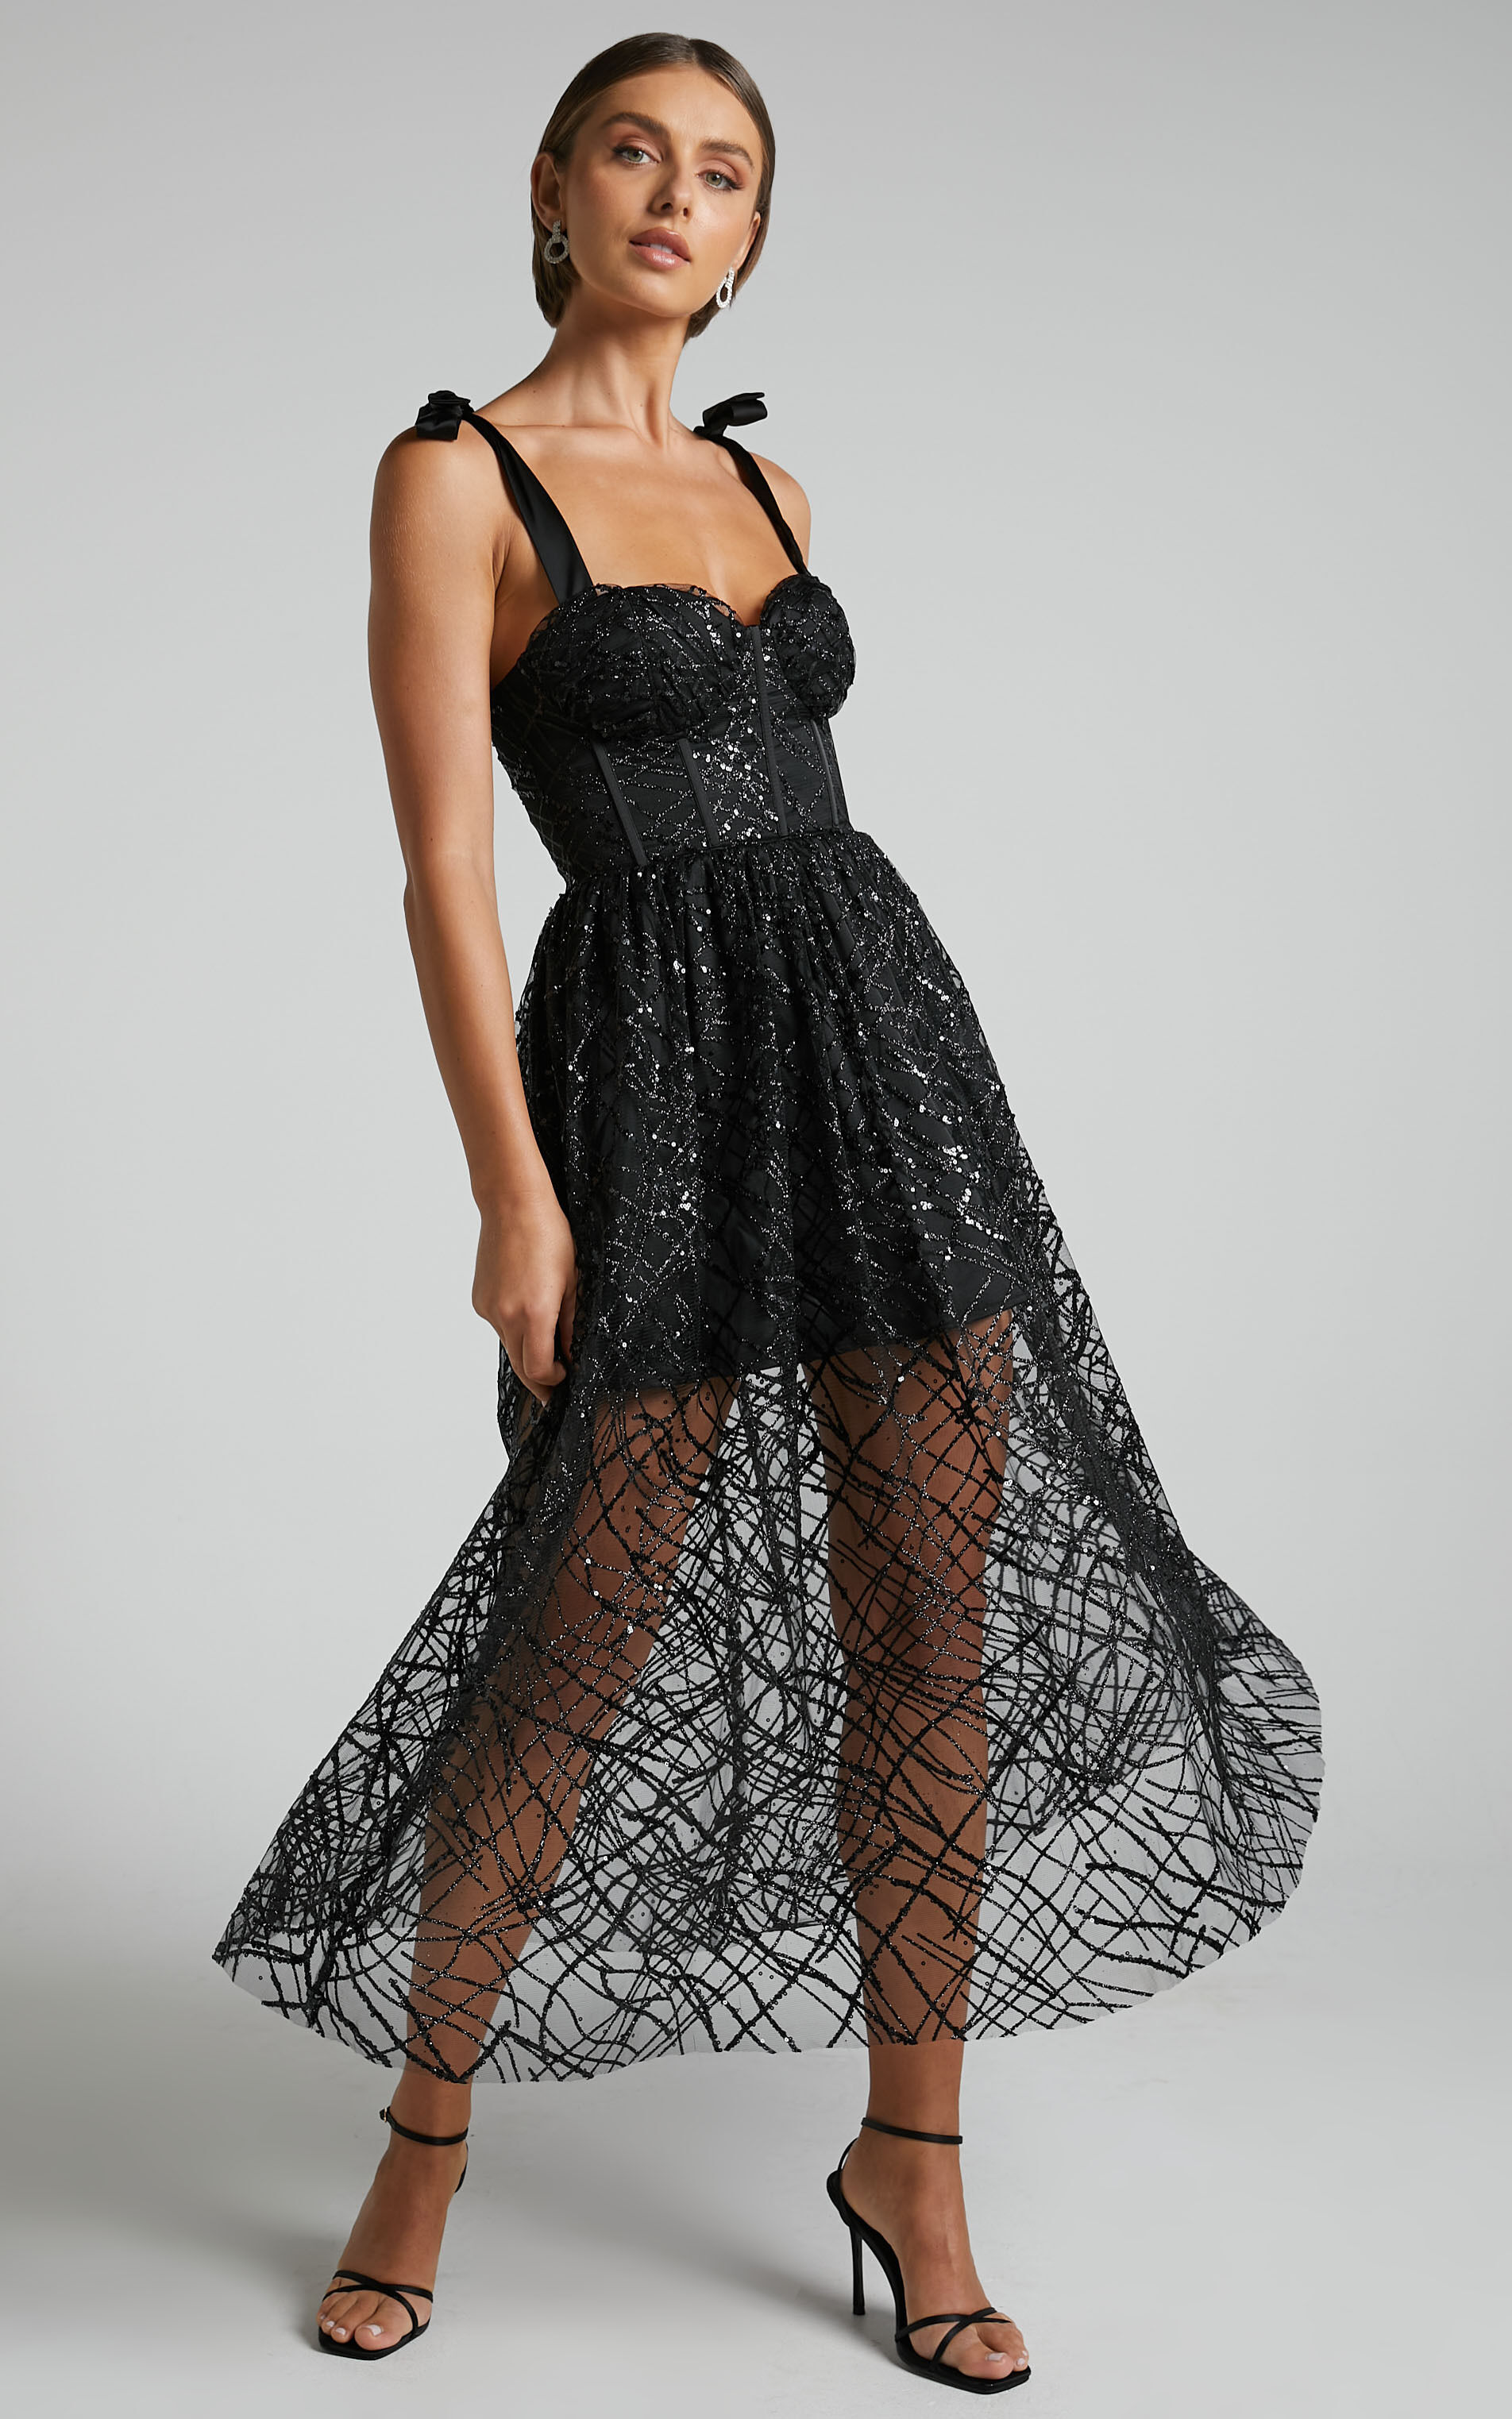 Rimea Maxi Dress - Tie Shoulder Bustier Bodice Glitter Tulle Dress in Black - 06, BLK1, super-hi-res image number null